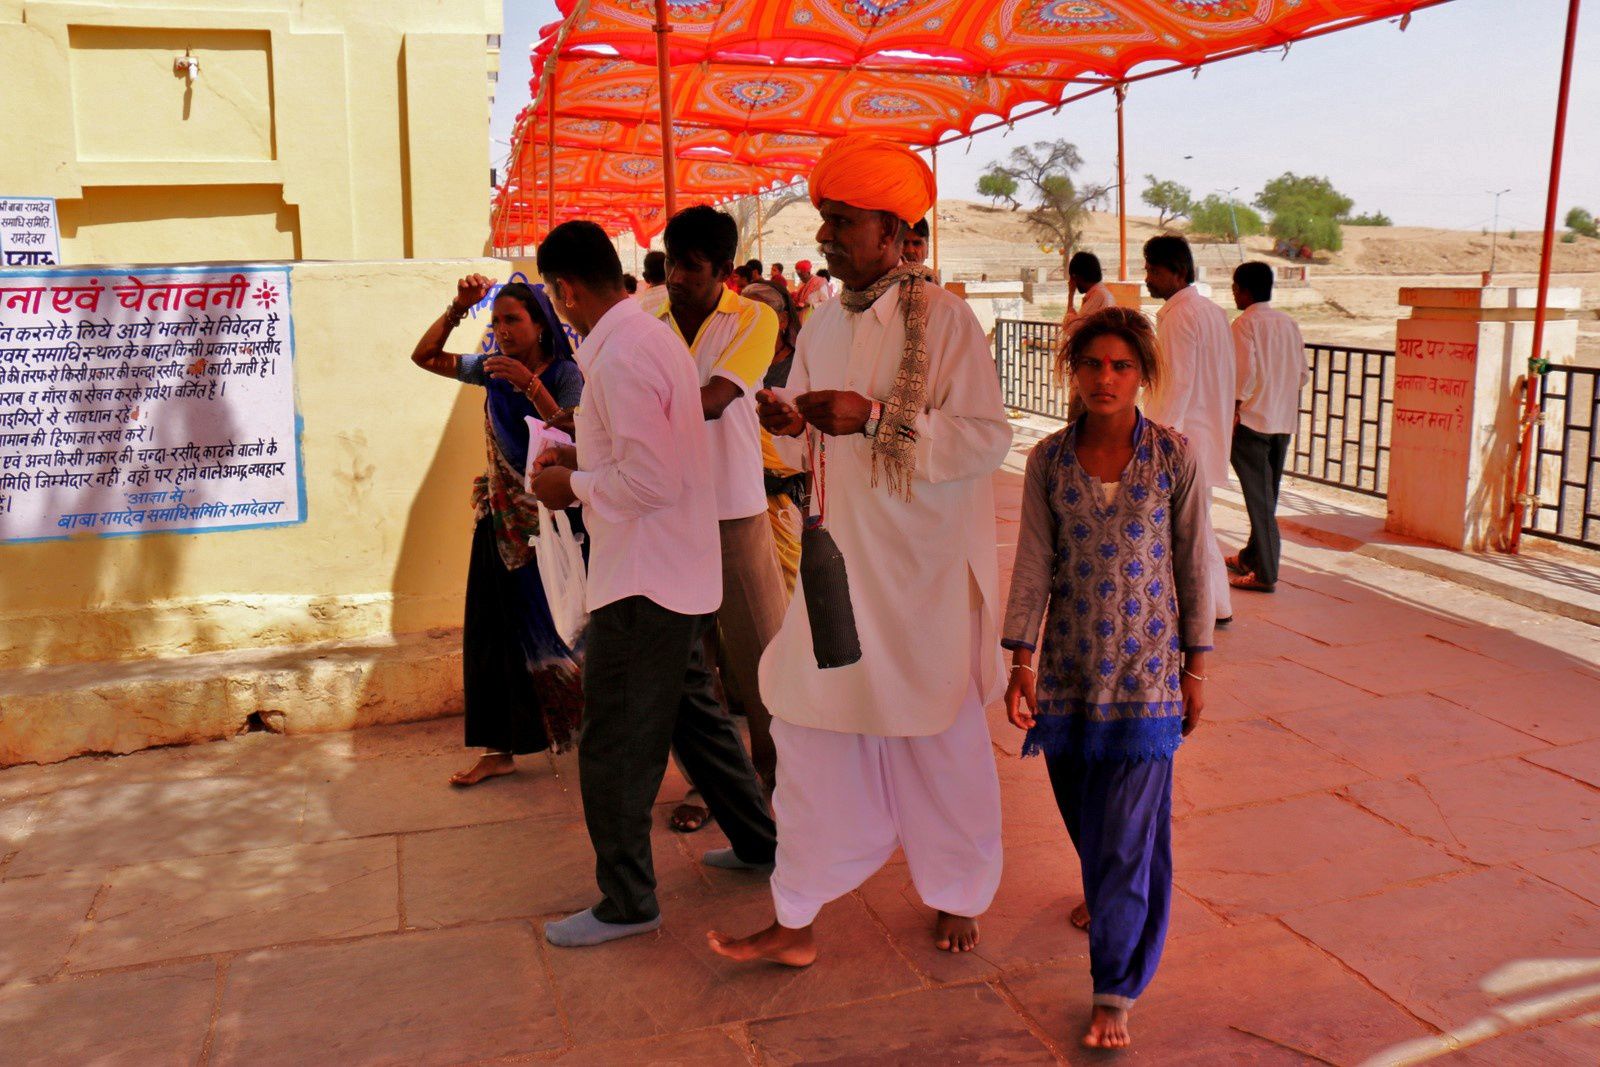 Lieu de culte sur la route entre Bikaner et Jaisalmer, Rajasthan (Inde)